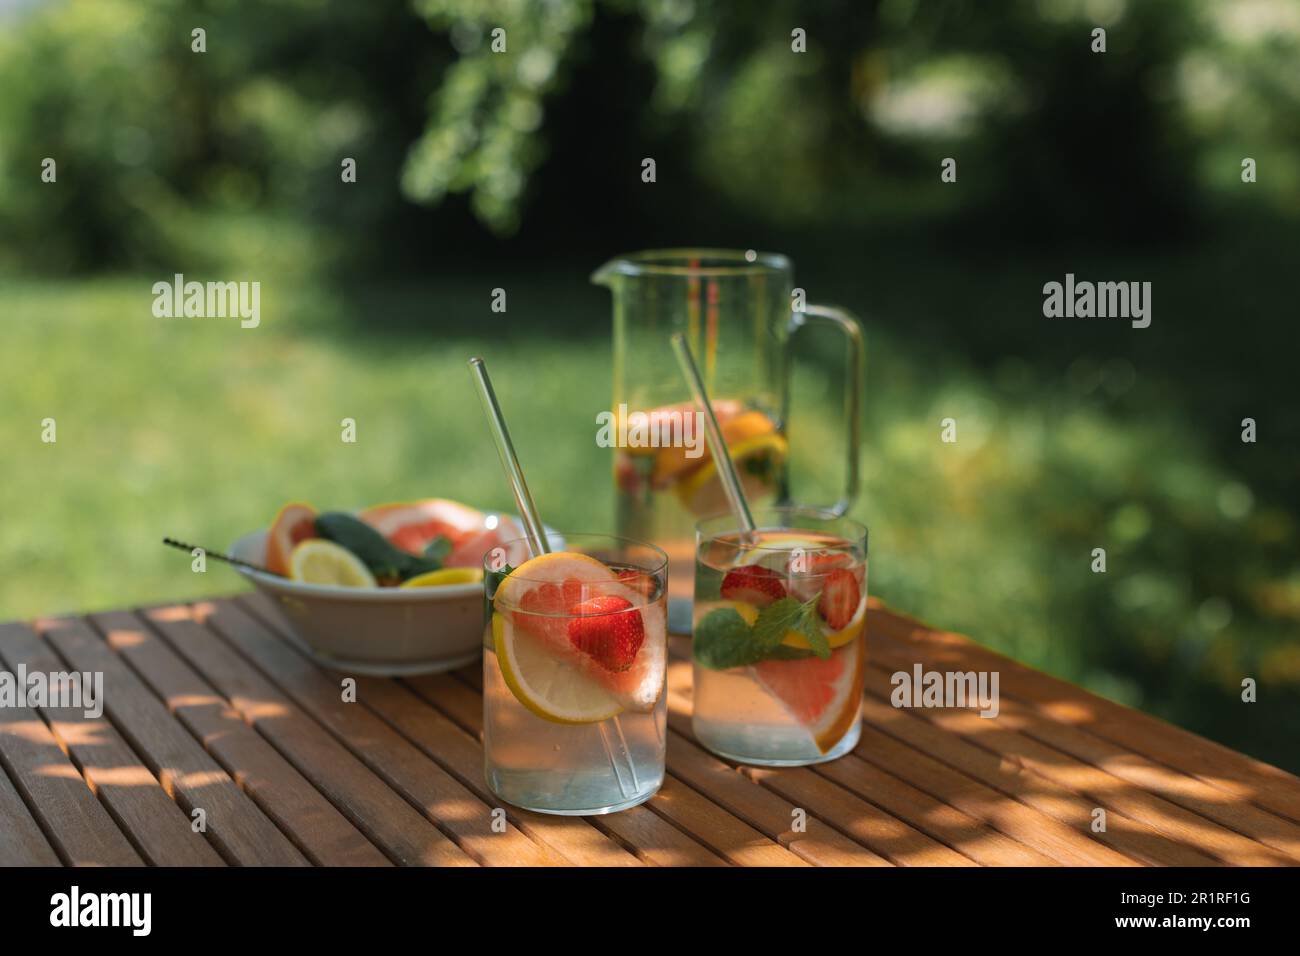 Stillleben von zwei Sommergetränken mit frischem Obst auf einem Tisch in gedämpftem Licht im Garten Stockfoto